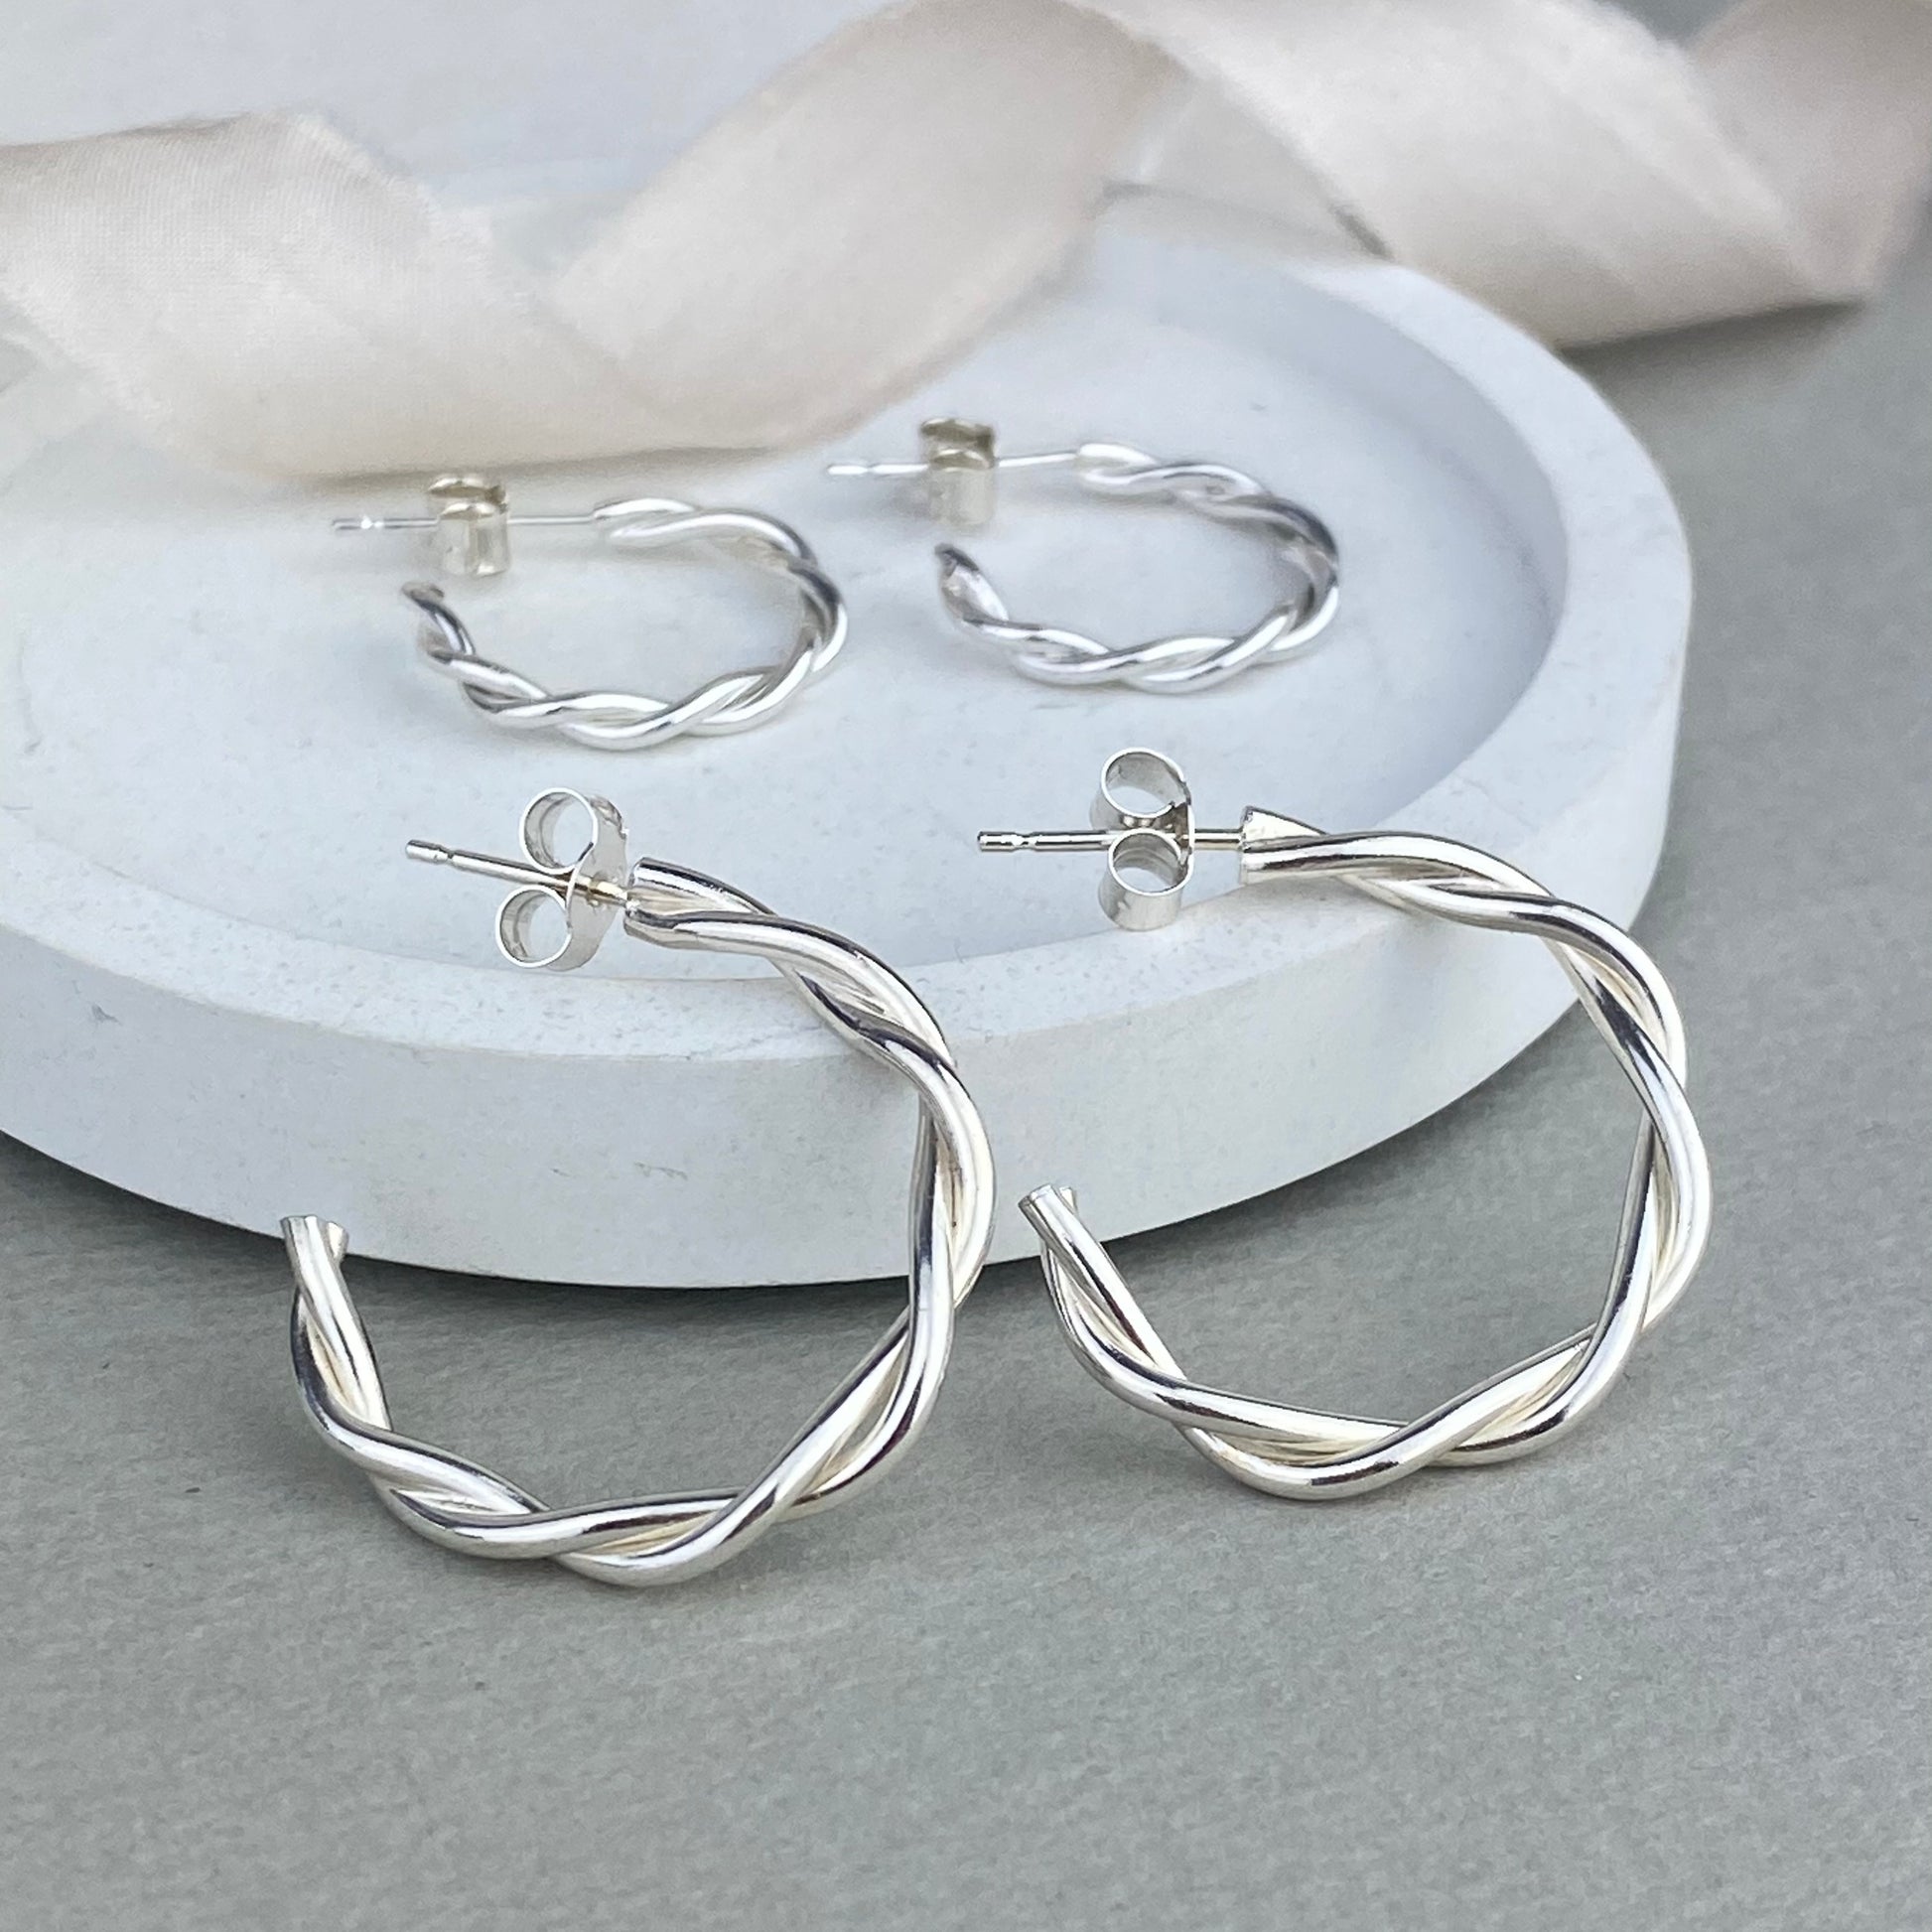 Twisted silver hoop earrings